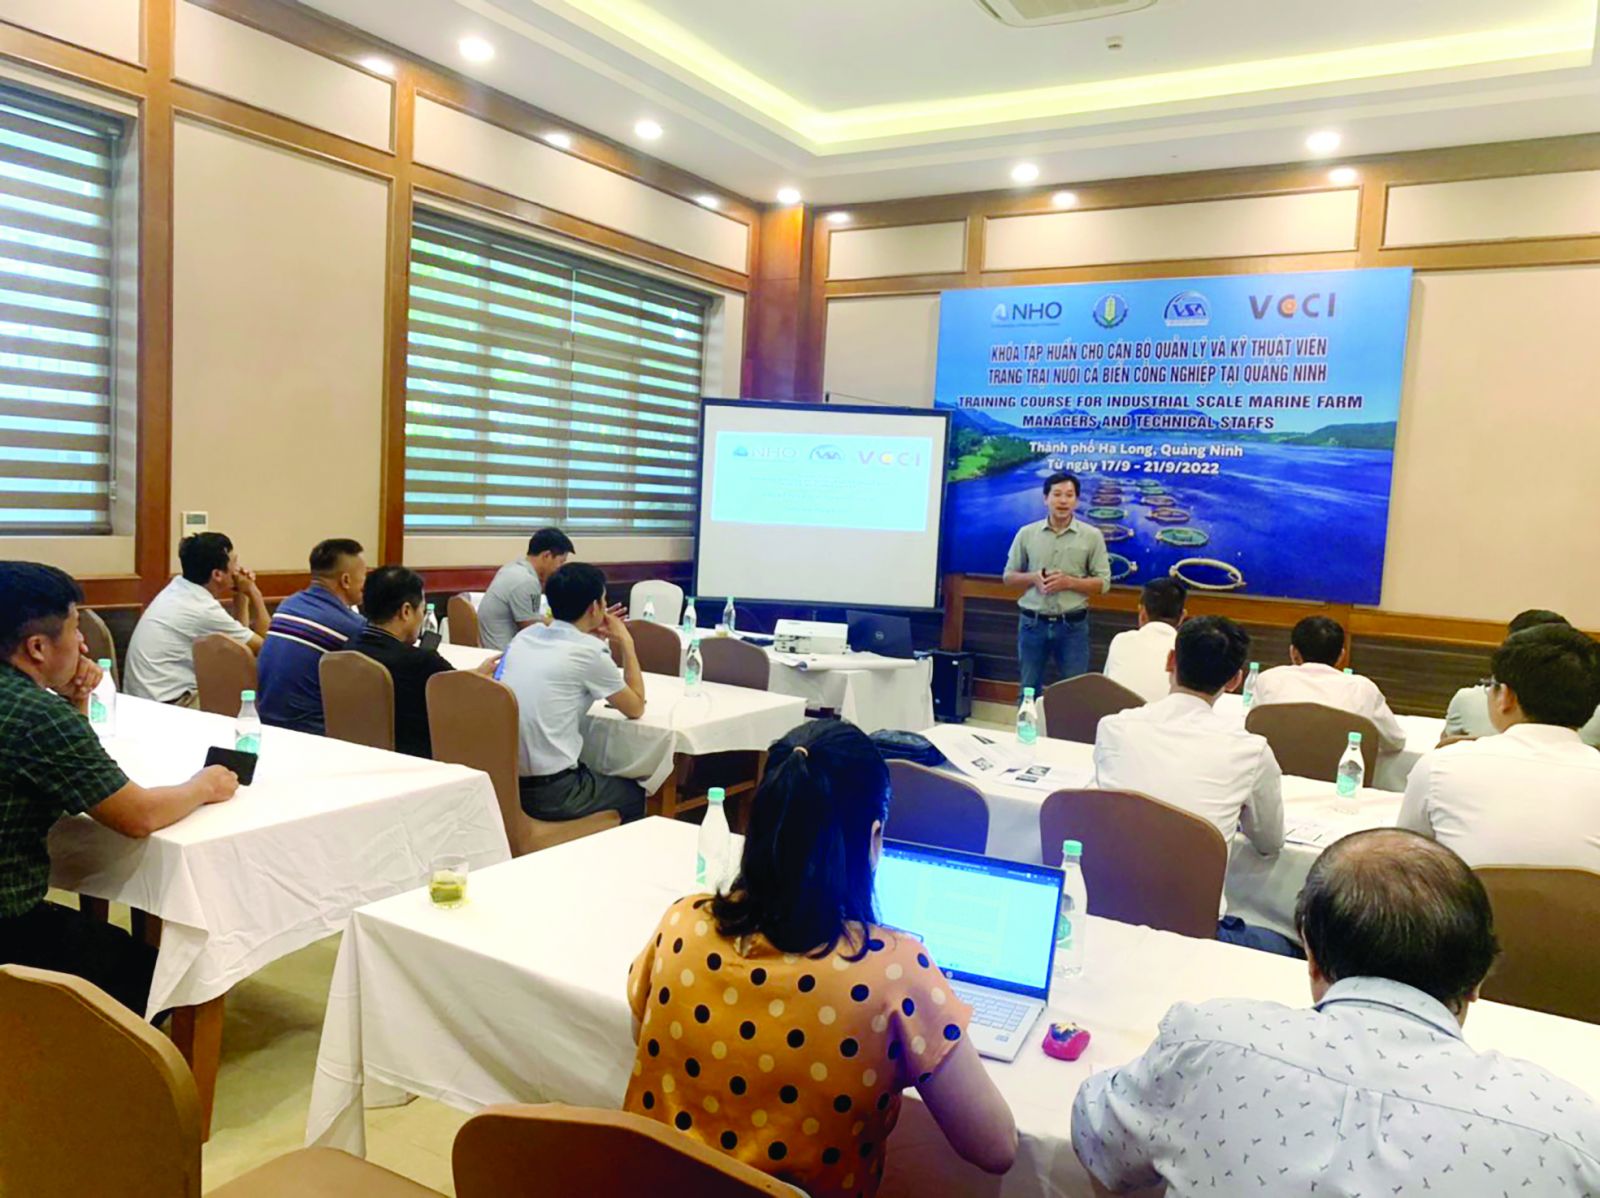  Tập huấn về Thiết lập cơ sở nuôi cá trên biển bằng lồng nổi HDPE cho chủ cơ sở và kỹ thuật viên ở Quảng Ninh do VSA và VCCI HCM) tổ chức.